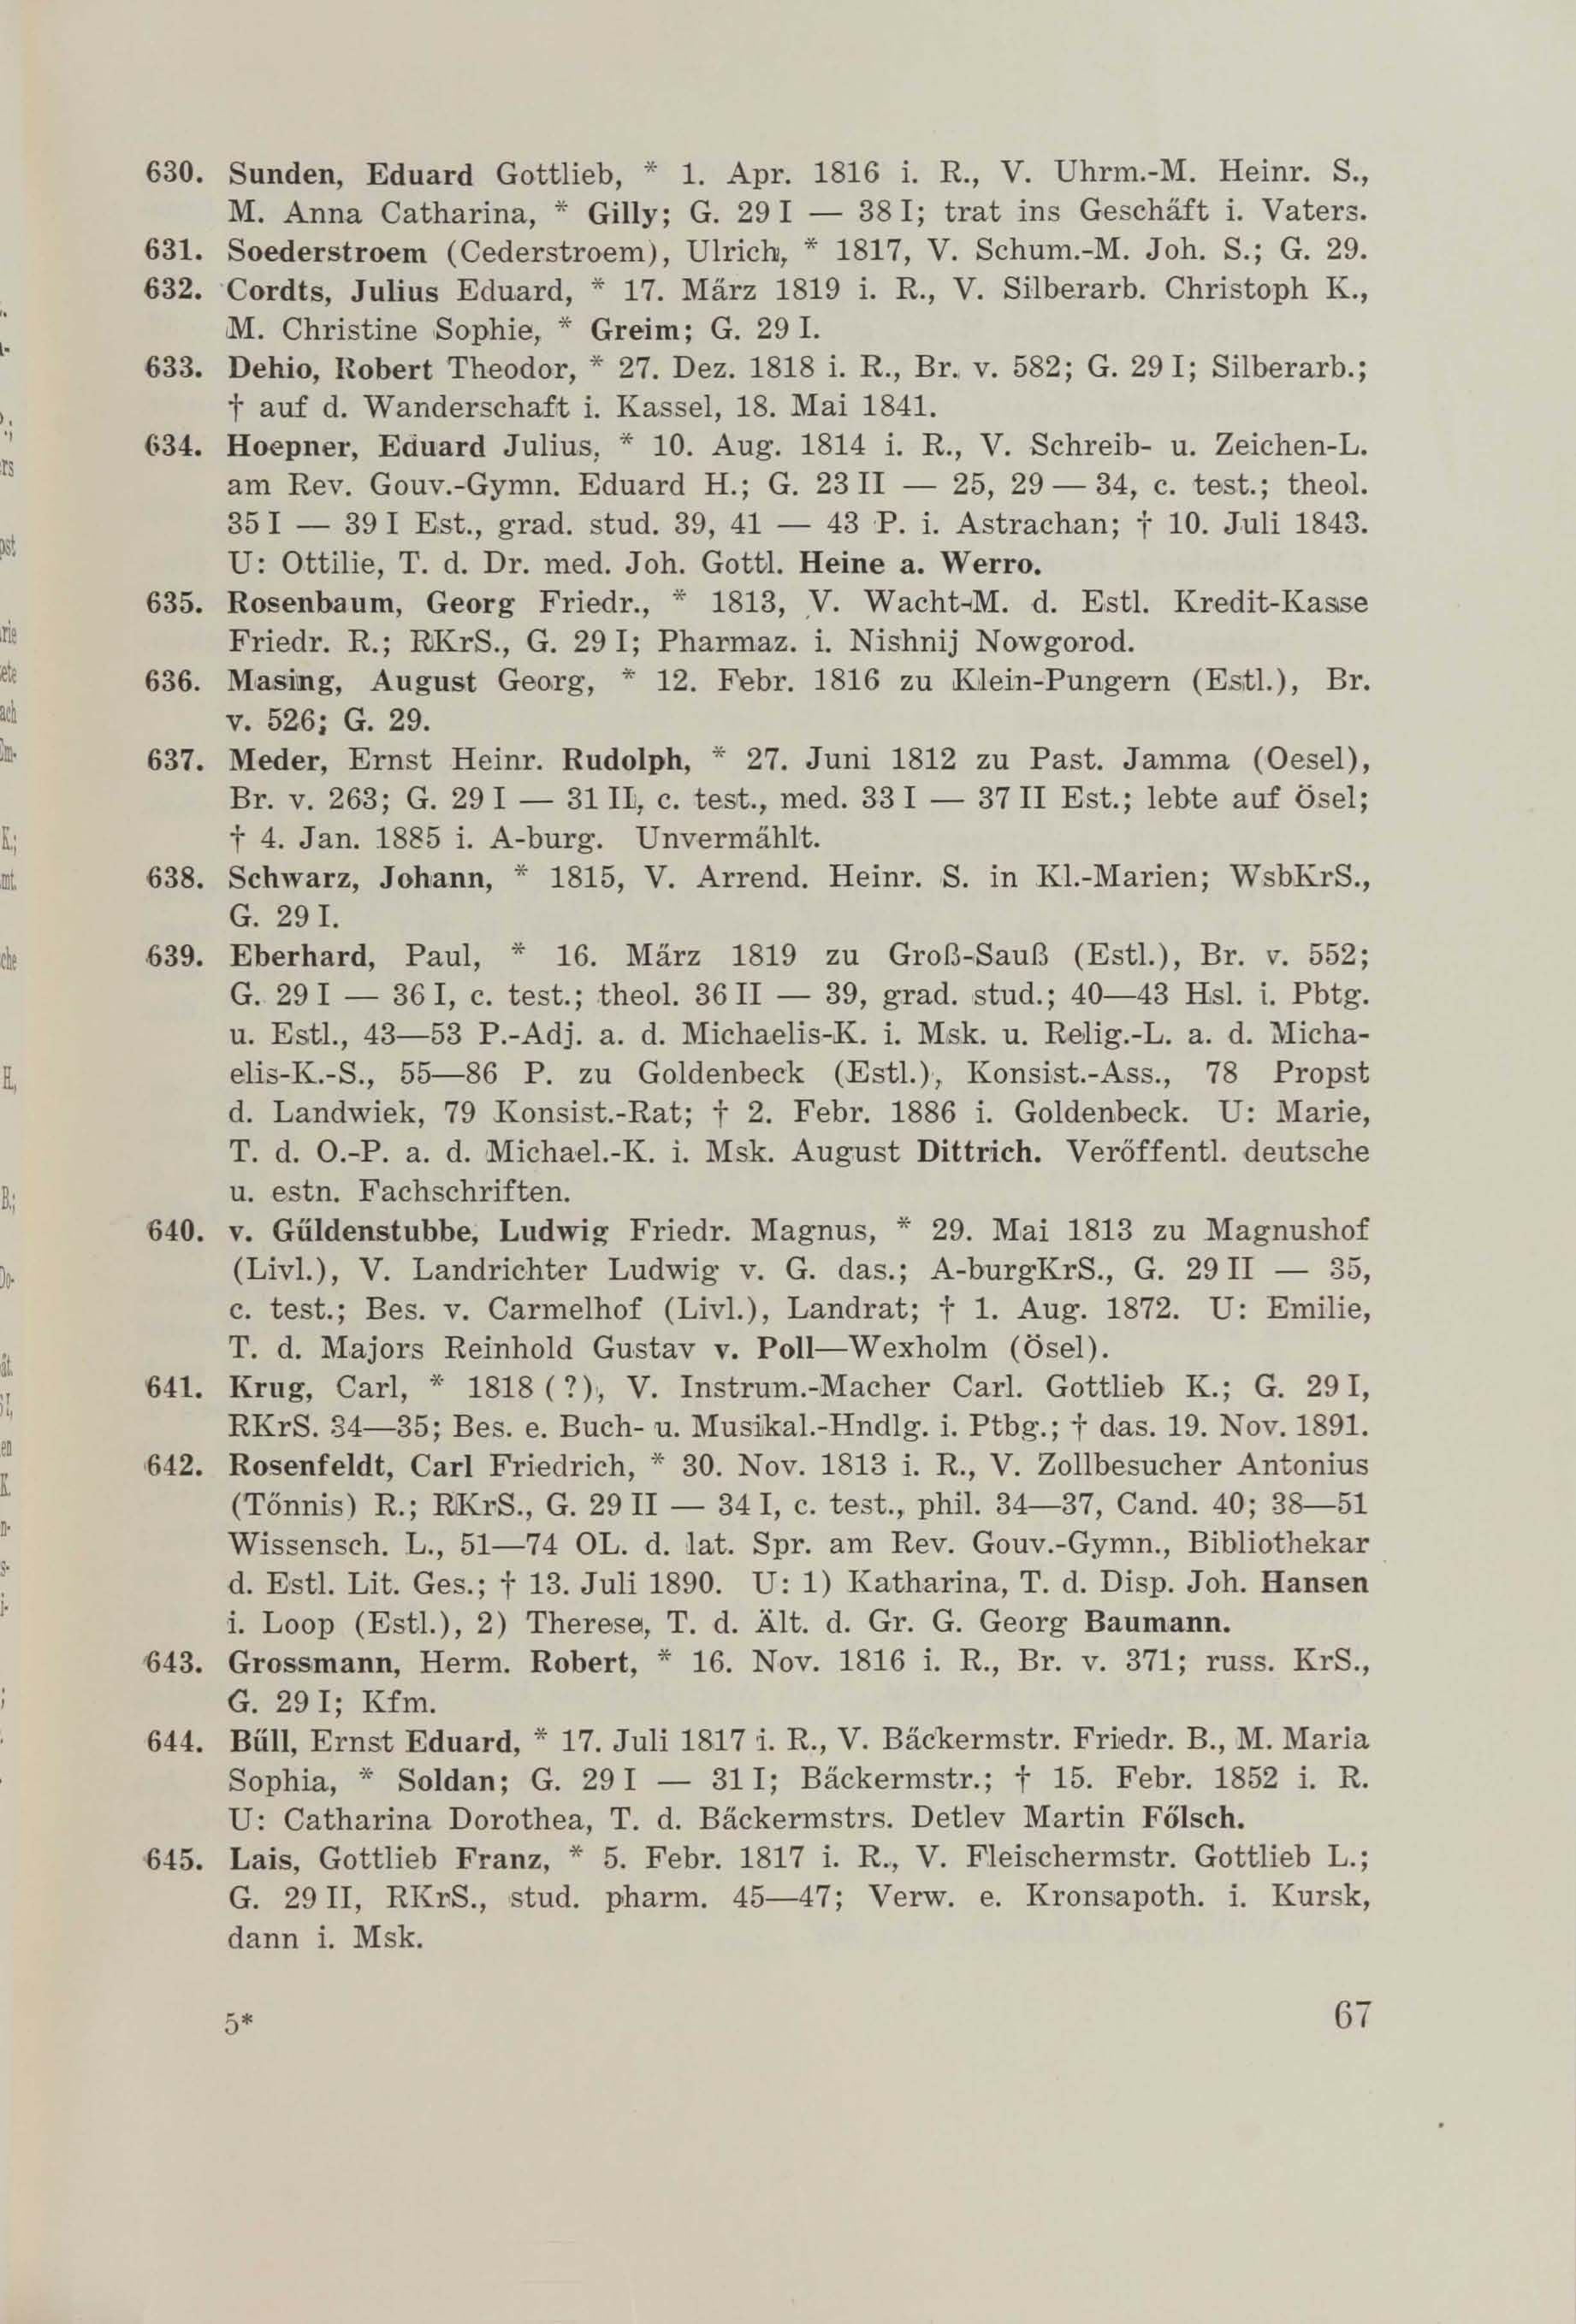 Schüler-Verzeichnis des Revalschen Gouvernements-Gymnasiums 1805–1890 (1931) | 77. (67) Main body of text